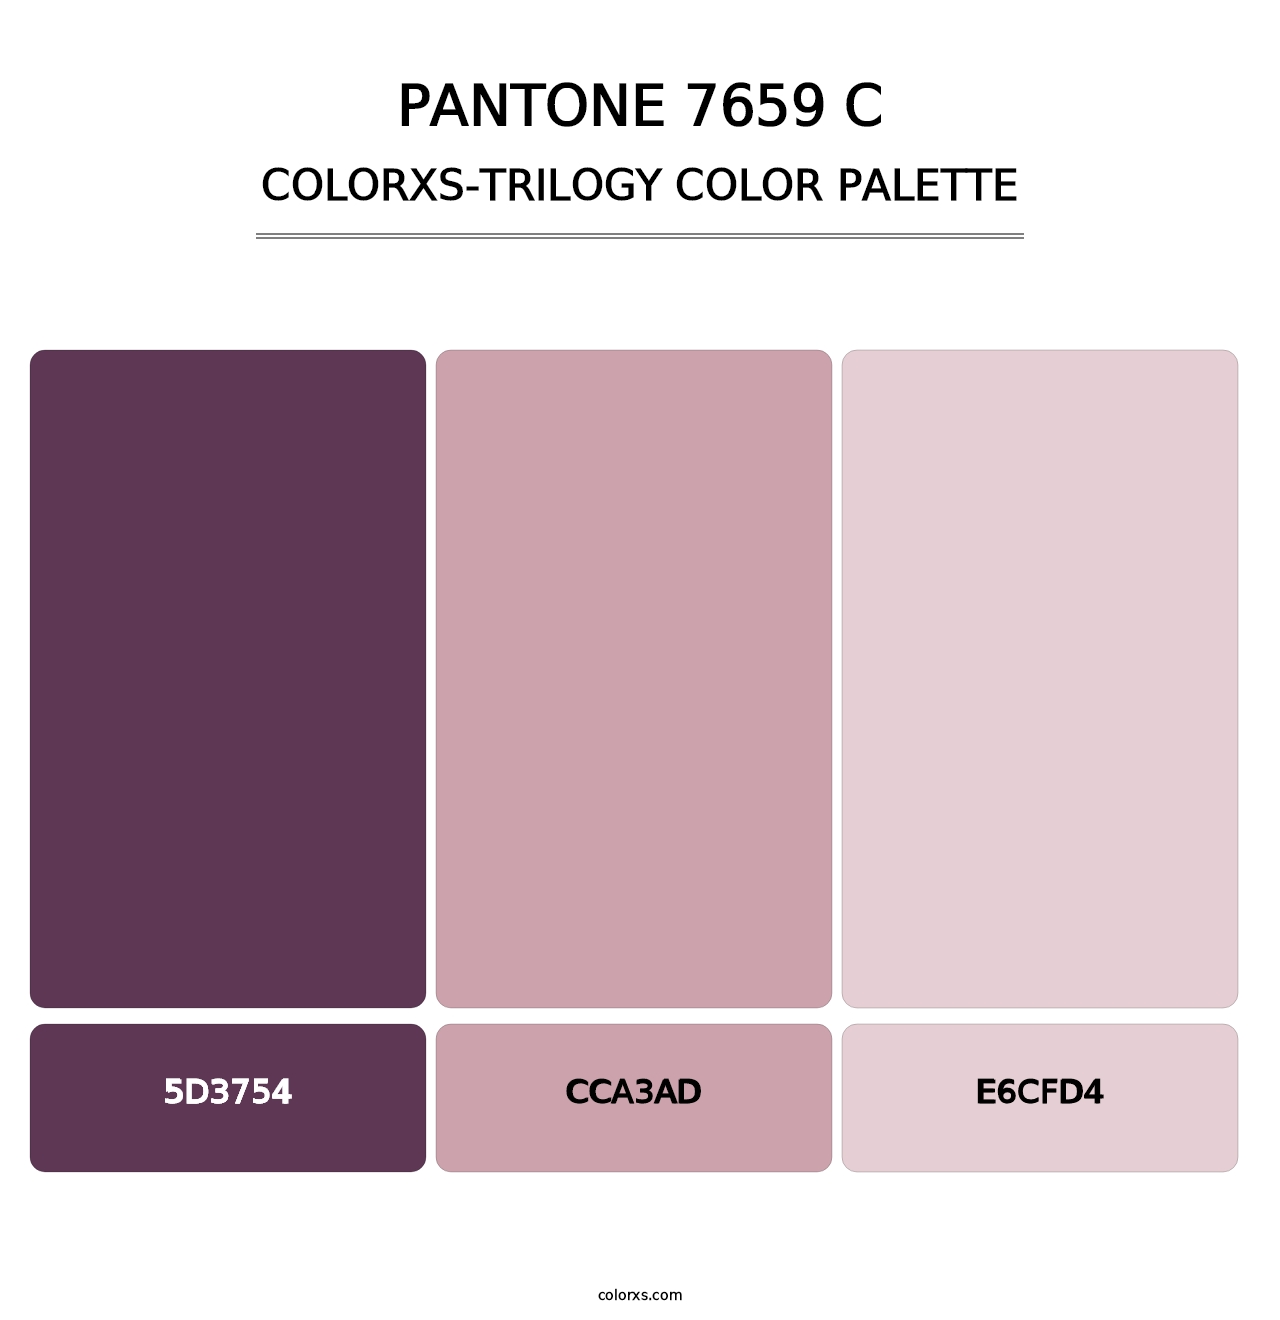 PANTONE 7659 C - Colorxs Trilogy Palette